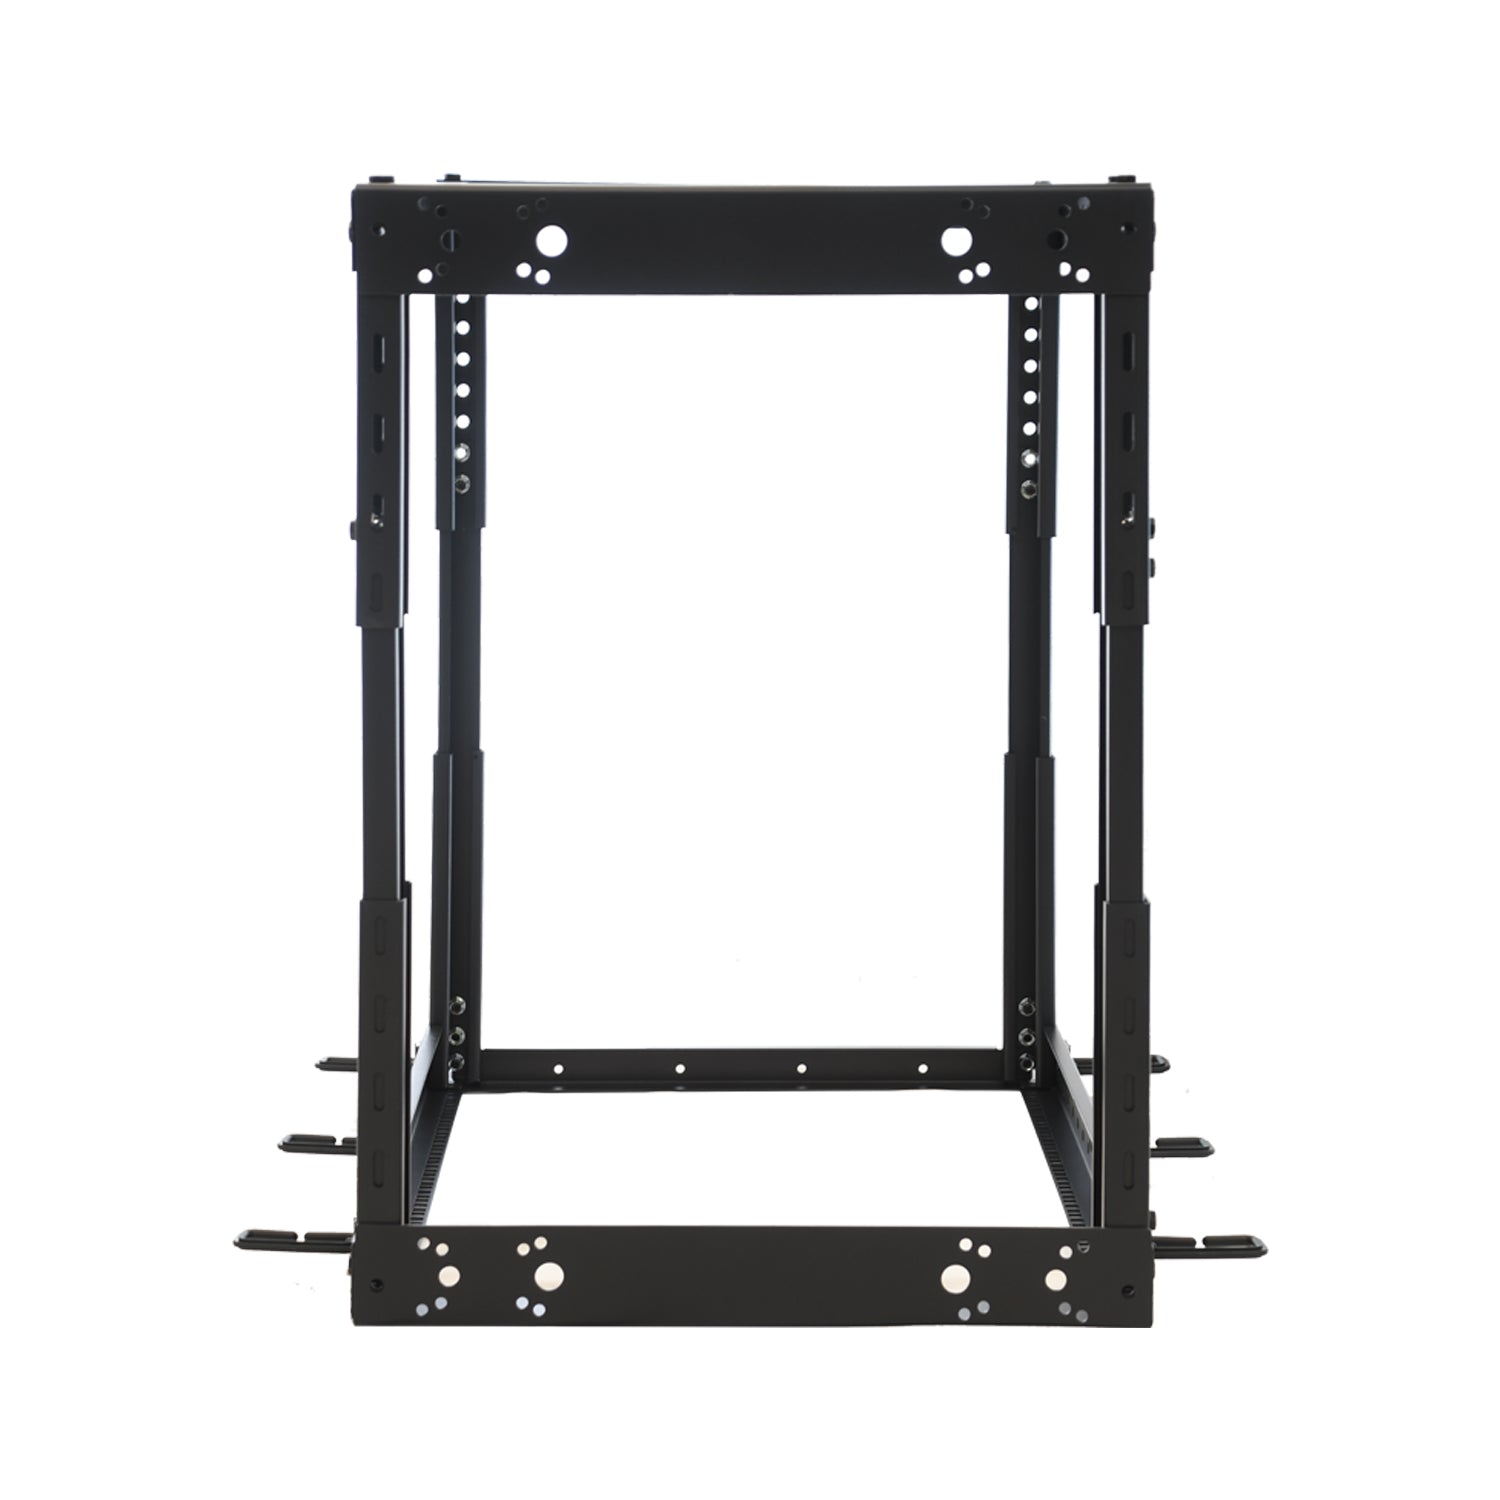 Aeons SR Seires 15U 4-Post Open Frame Rack, Adjustable Depth